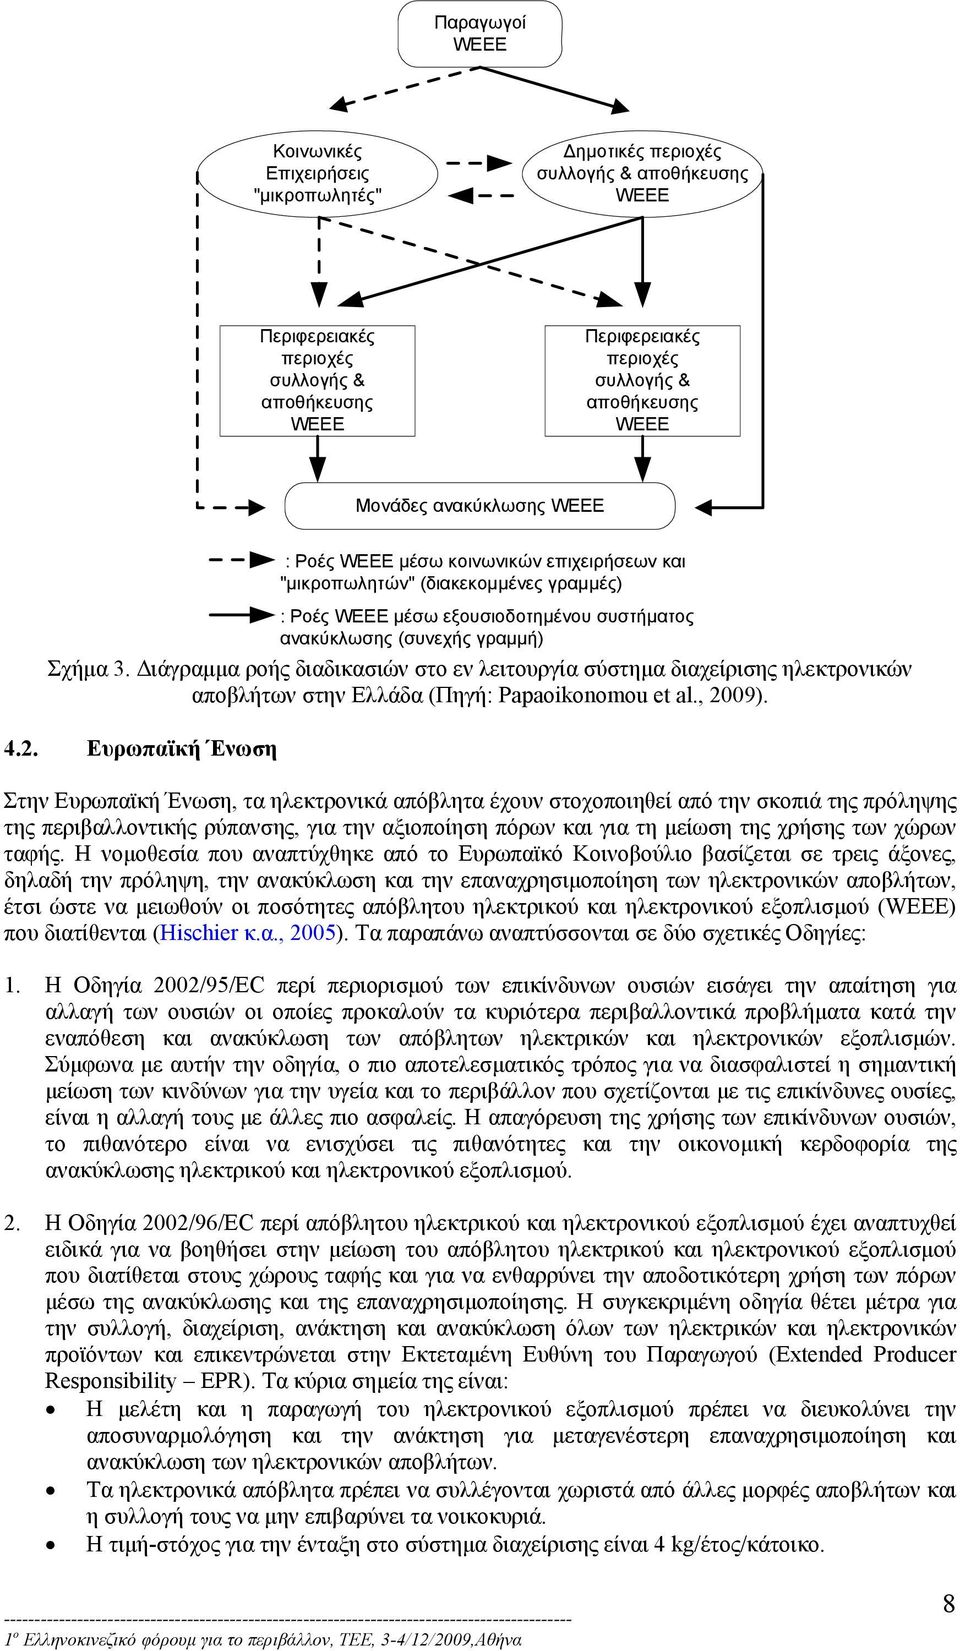 Διάγραμμα ροής διαδικασιών στο εν λειτουργία σύστημα διαχείρισης ηλεκτρονικών αποβλήτων στην Ελλάδα (Πηγή: Papaoikonomou et al., 20